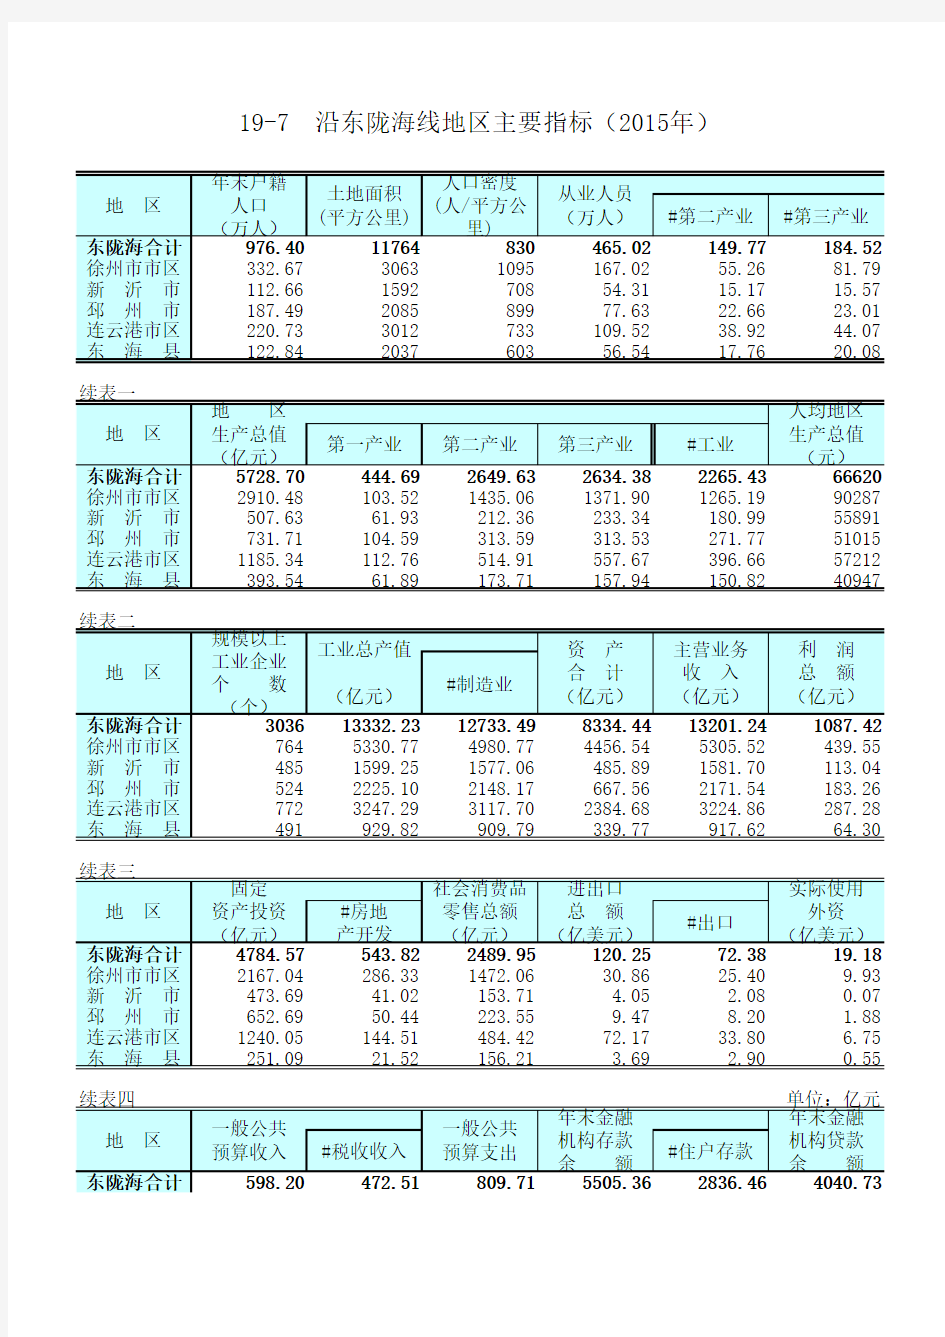 江苏统计年鉴2016社会经济发展指标：沿东陇海线地区主要指标2015年